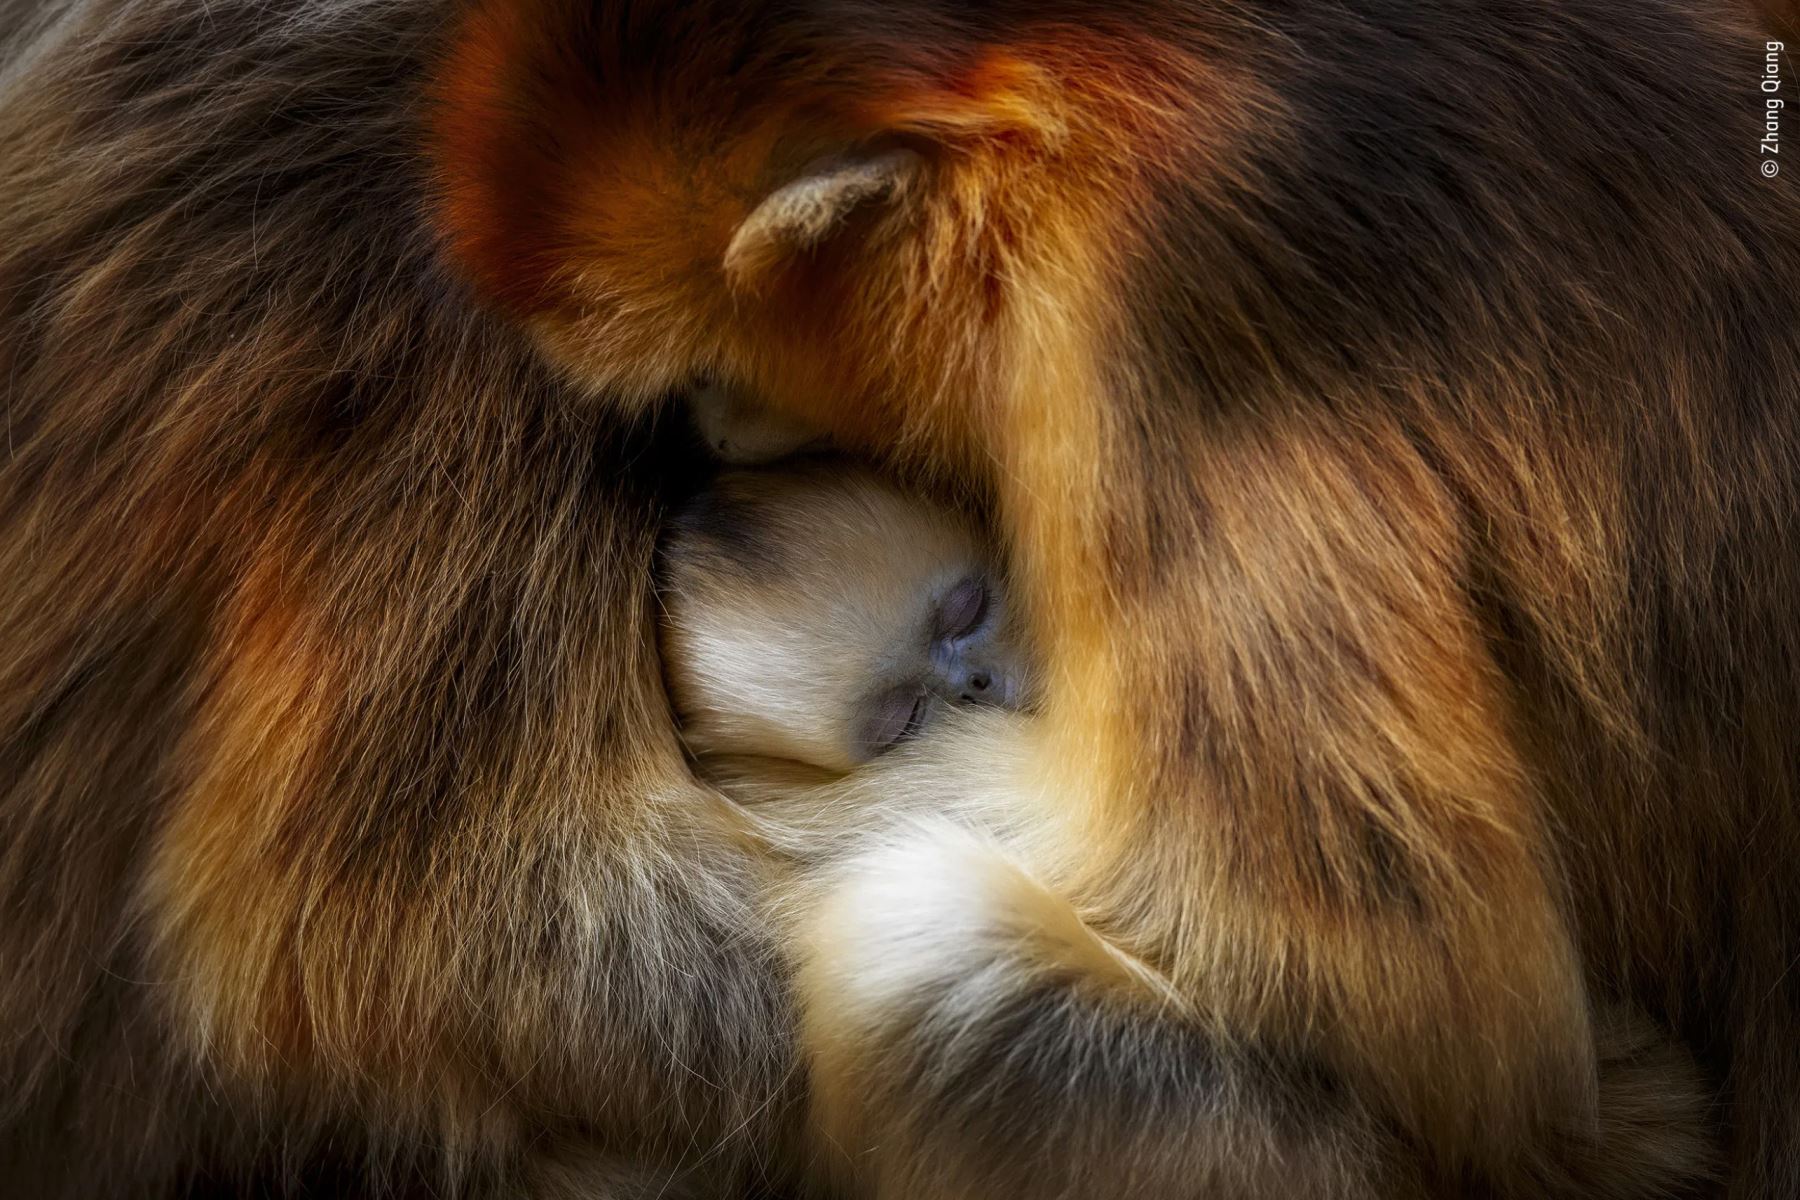 Los bosques templados de las montañas son el único hábitat de los monos en peligro de extinción. Esta imagen captura perfectamente ese momento de intimidad. El inconfundible rostro azul del joven mono se encontraba entre dos hembras, su llamativo pelaje dorado anaranjado salpicado de luz. Foto: Zhang Qiangs/ Wildlife Photographer of the Year